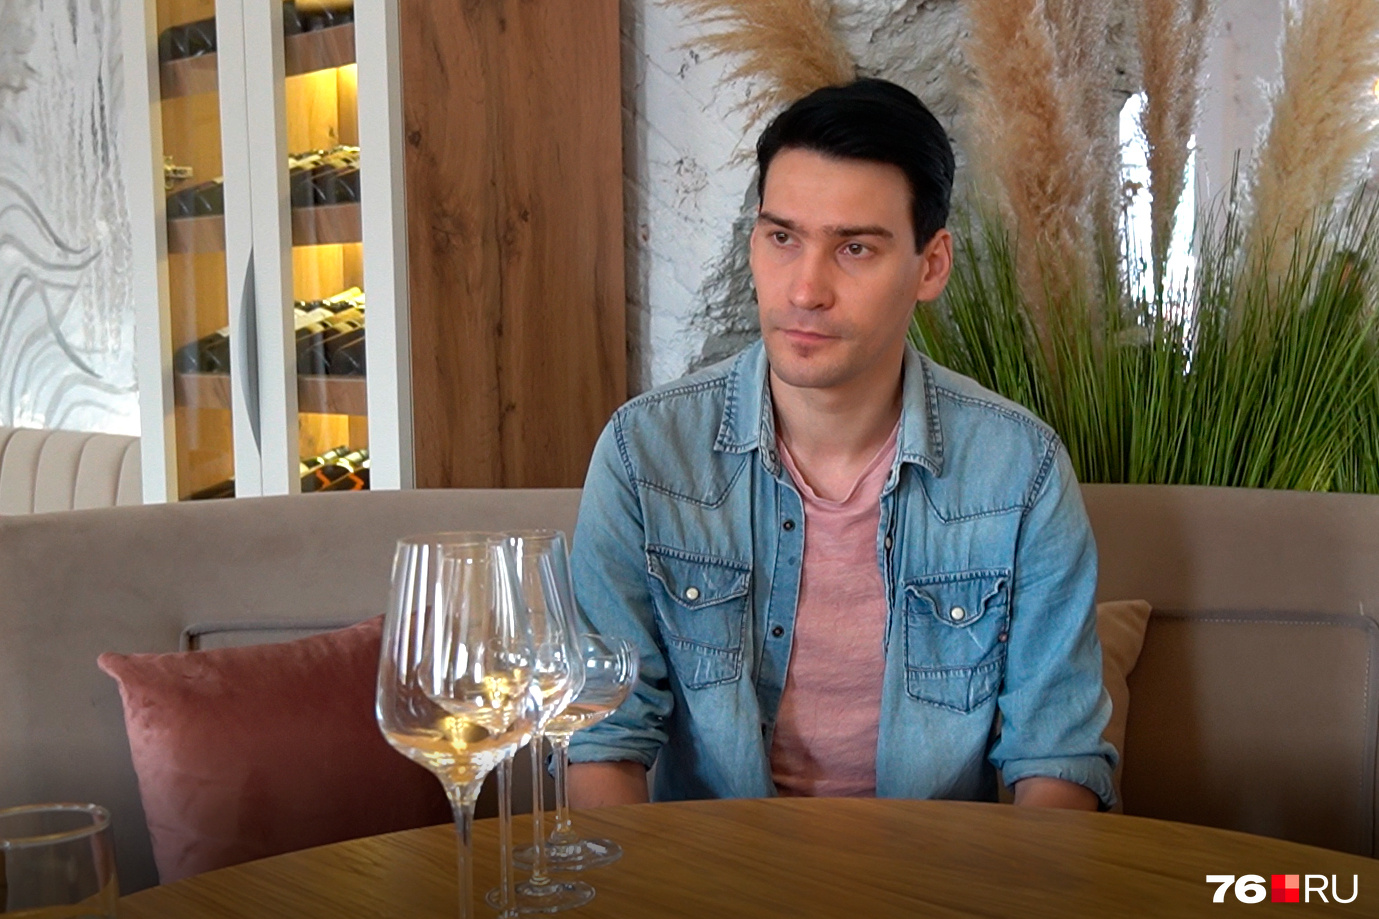 Ярославский сомелье рассказал, как выбрать хорошее вино, на что обратитьвнимание на бутылке - 4 августа 2022 - 76.ru